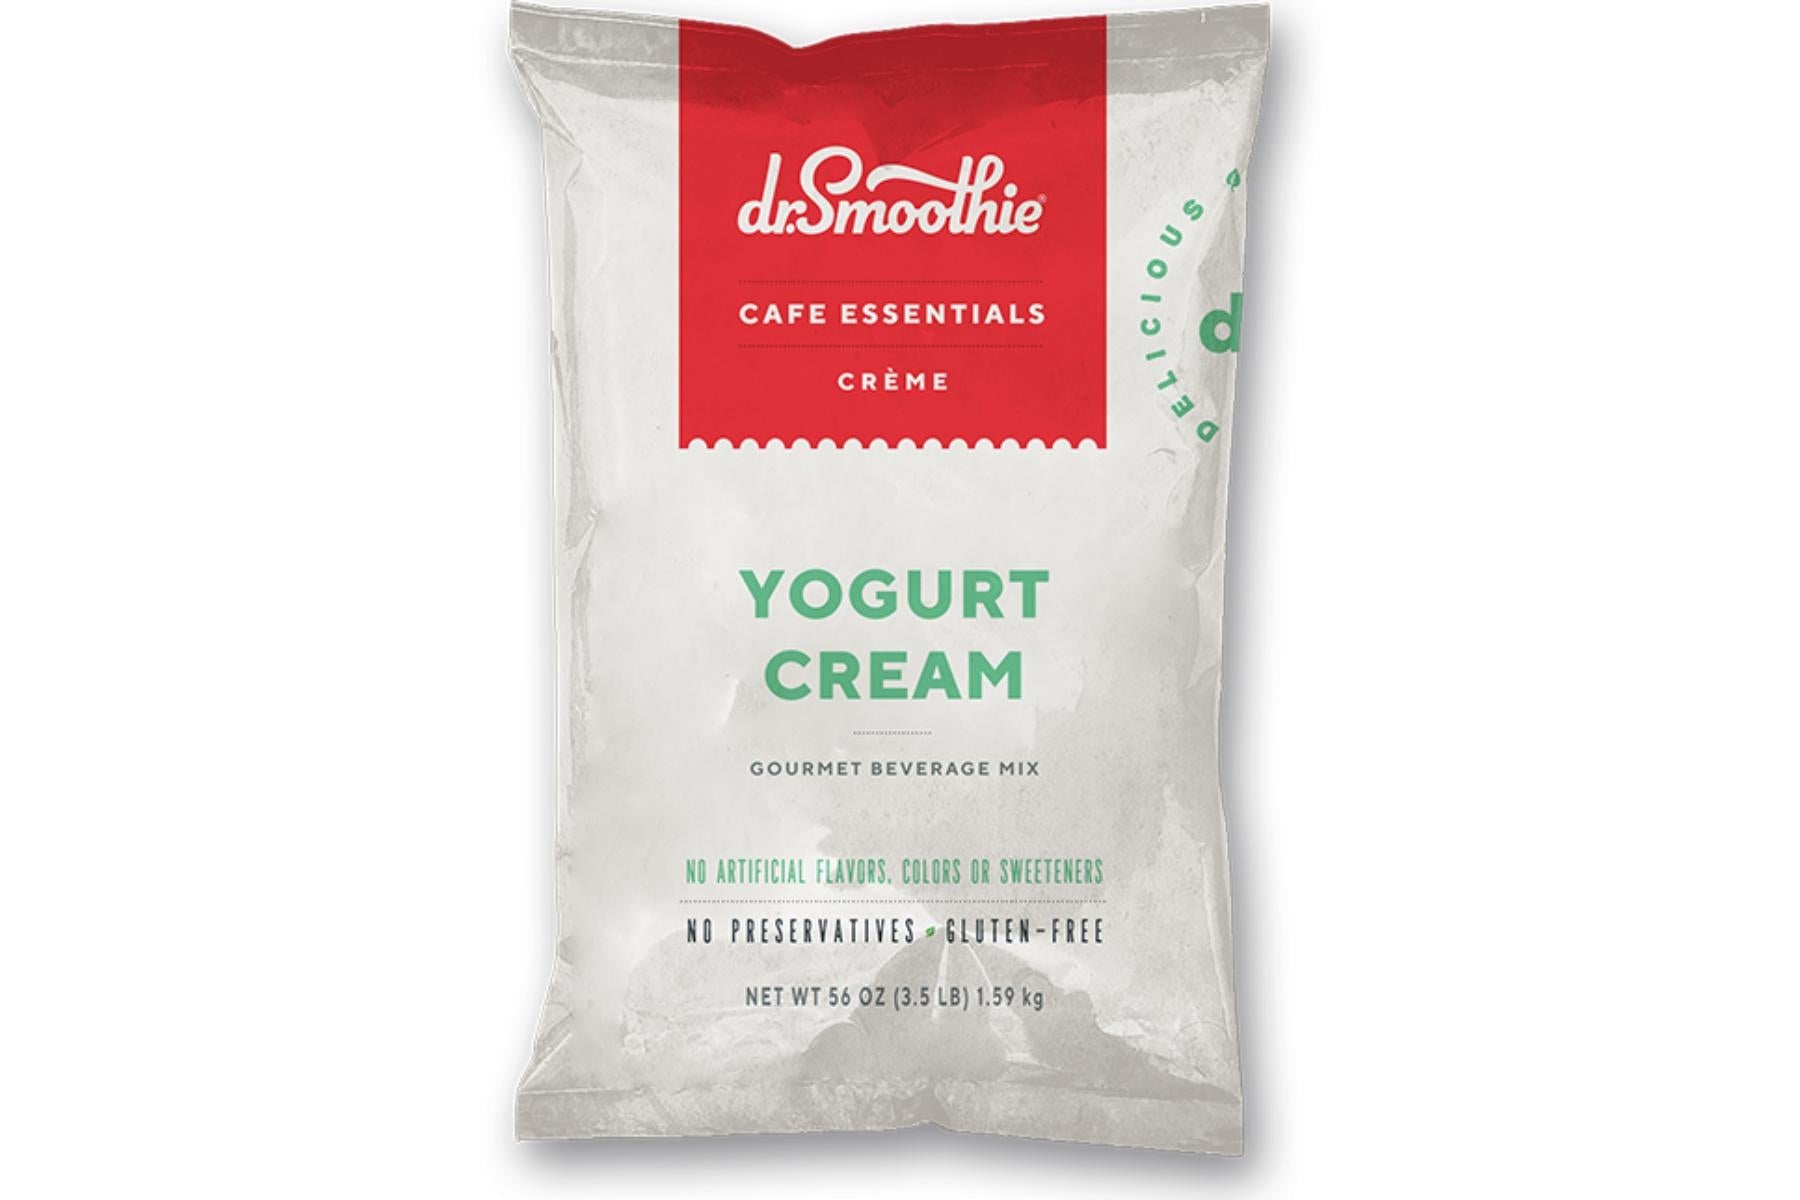 Dr. Smoothie Cafe Essentials Creme - 3.5lb Bulk Bag: Yogurt Cream